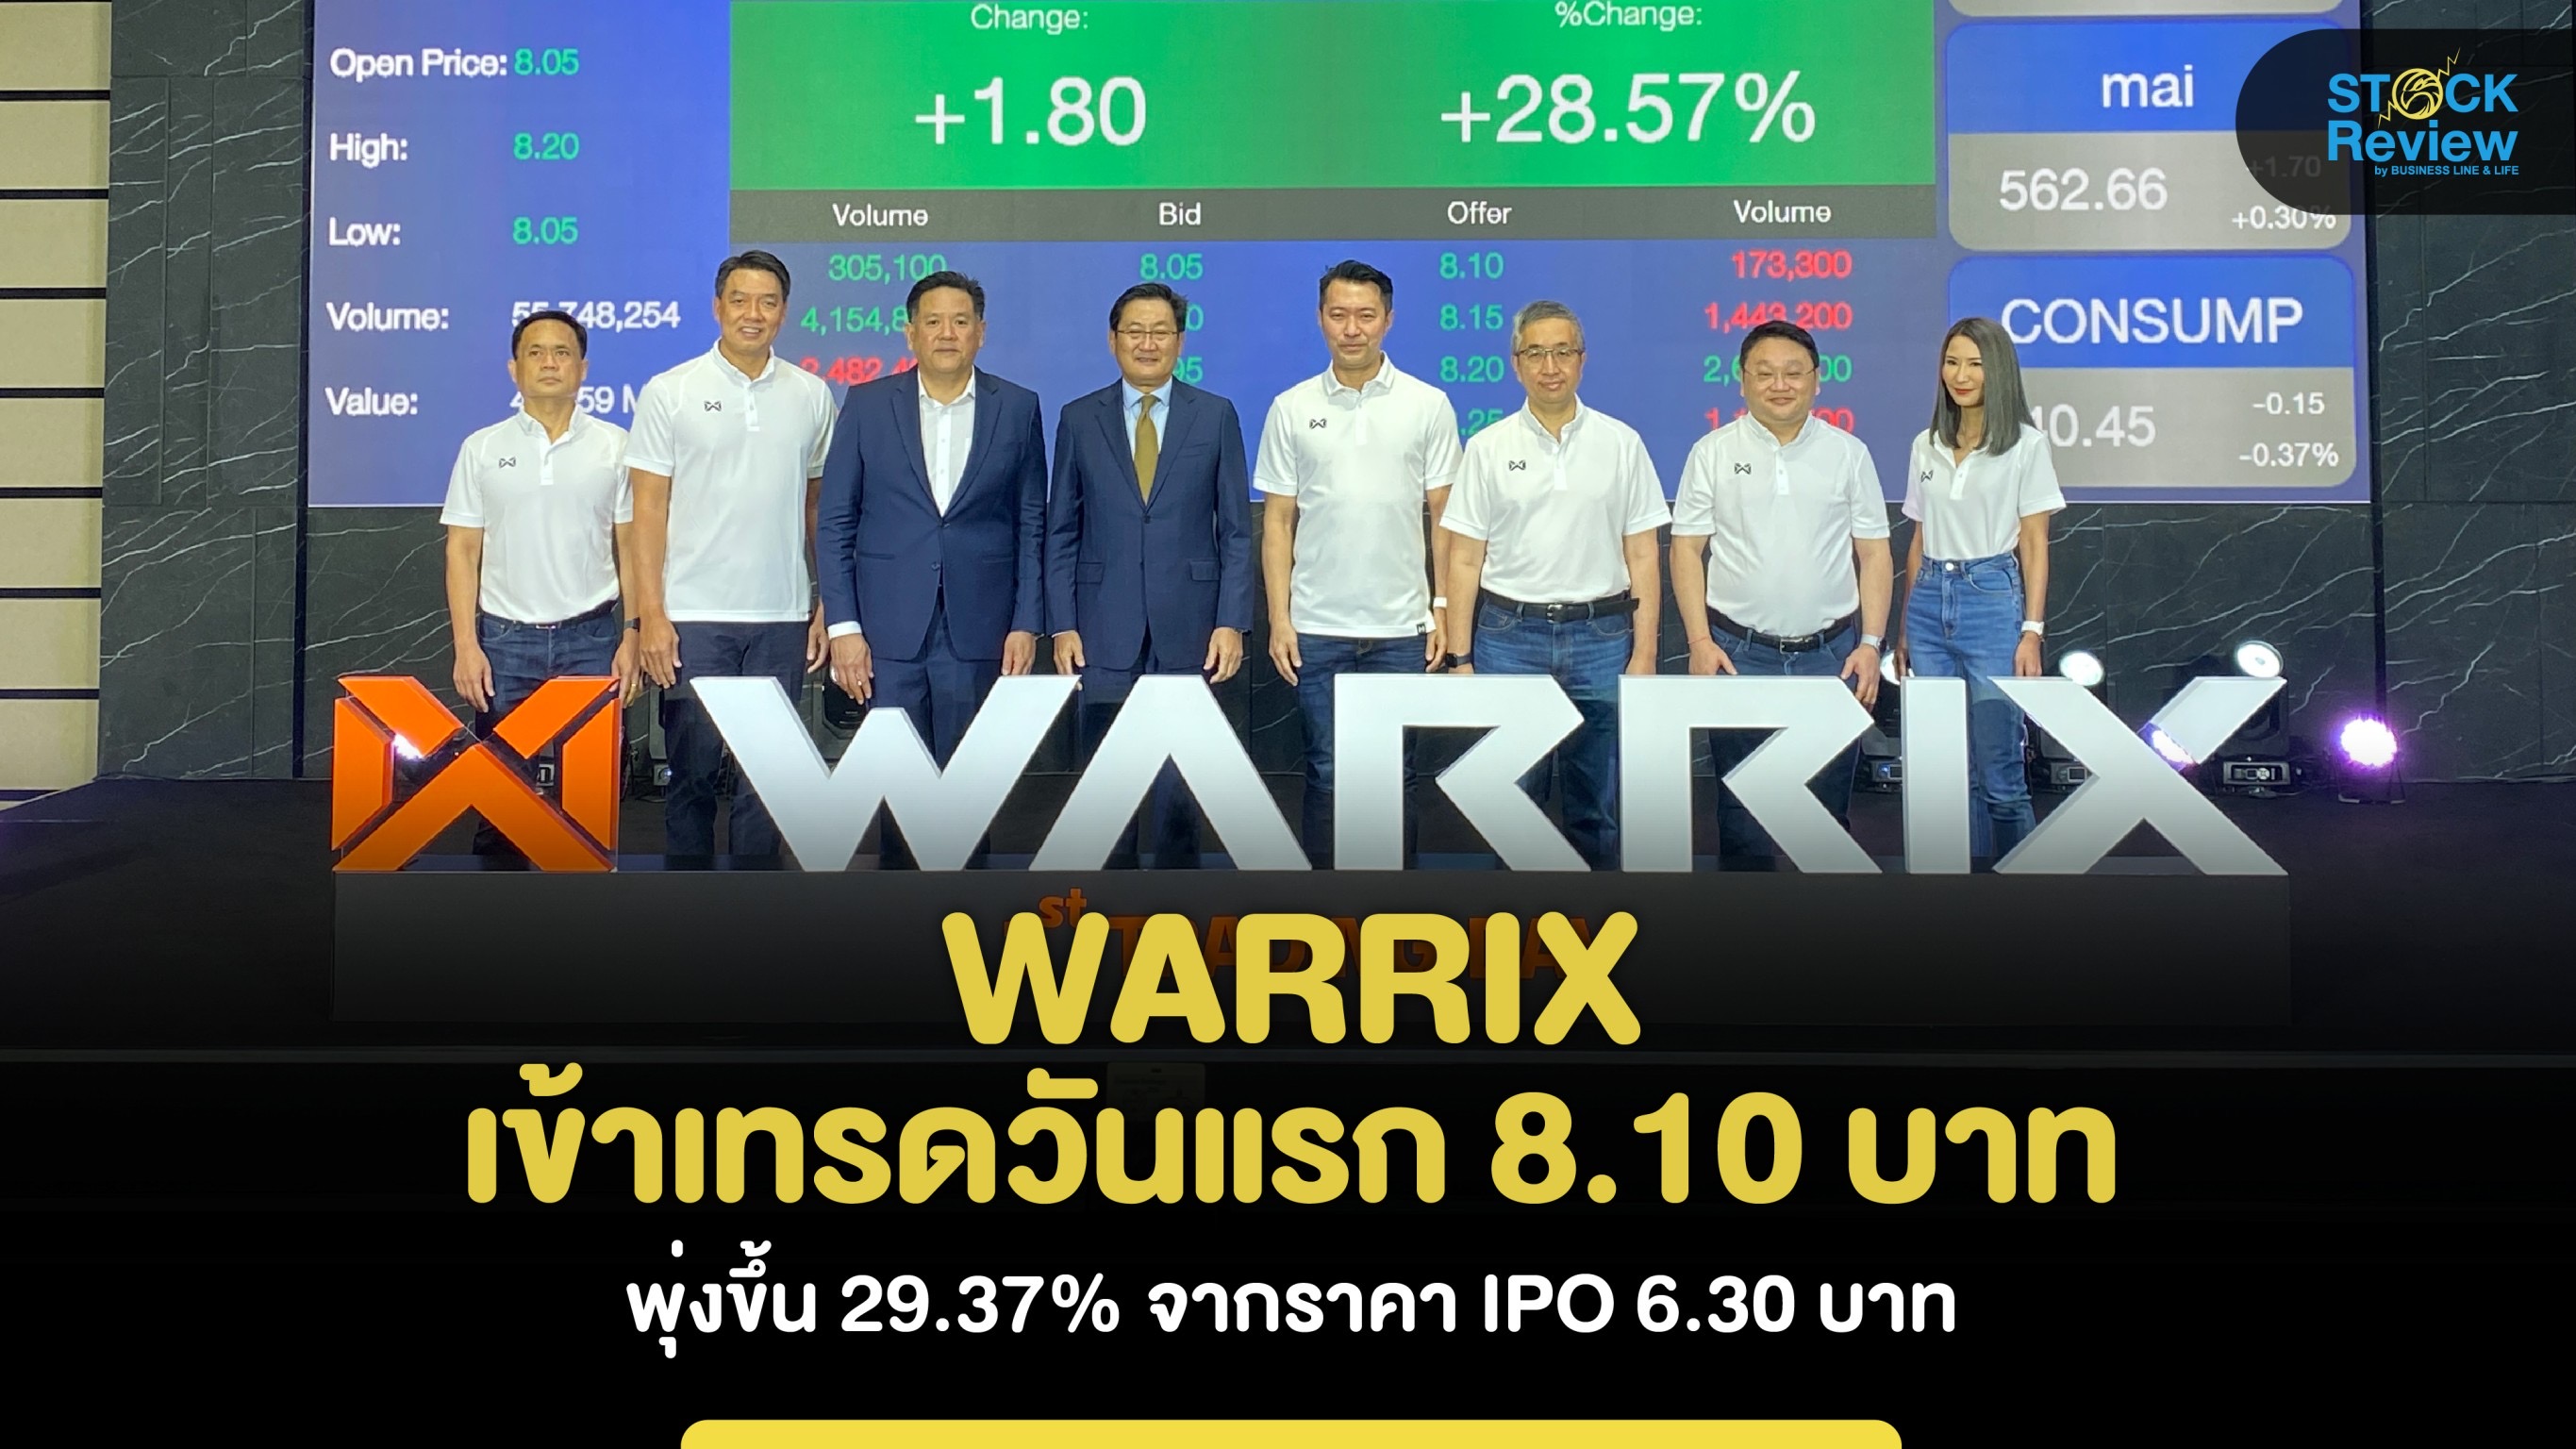 WARRIX เทรดวันแรก 8.10 บาท พุ่งขึ้น 29.37% จากราคา IPO 6.30 บาท ตอกย้ำเป้าหมายพาแบรนด์ไทยไปตลาดโลก